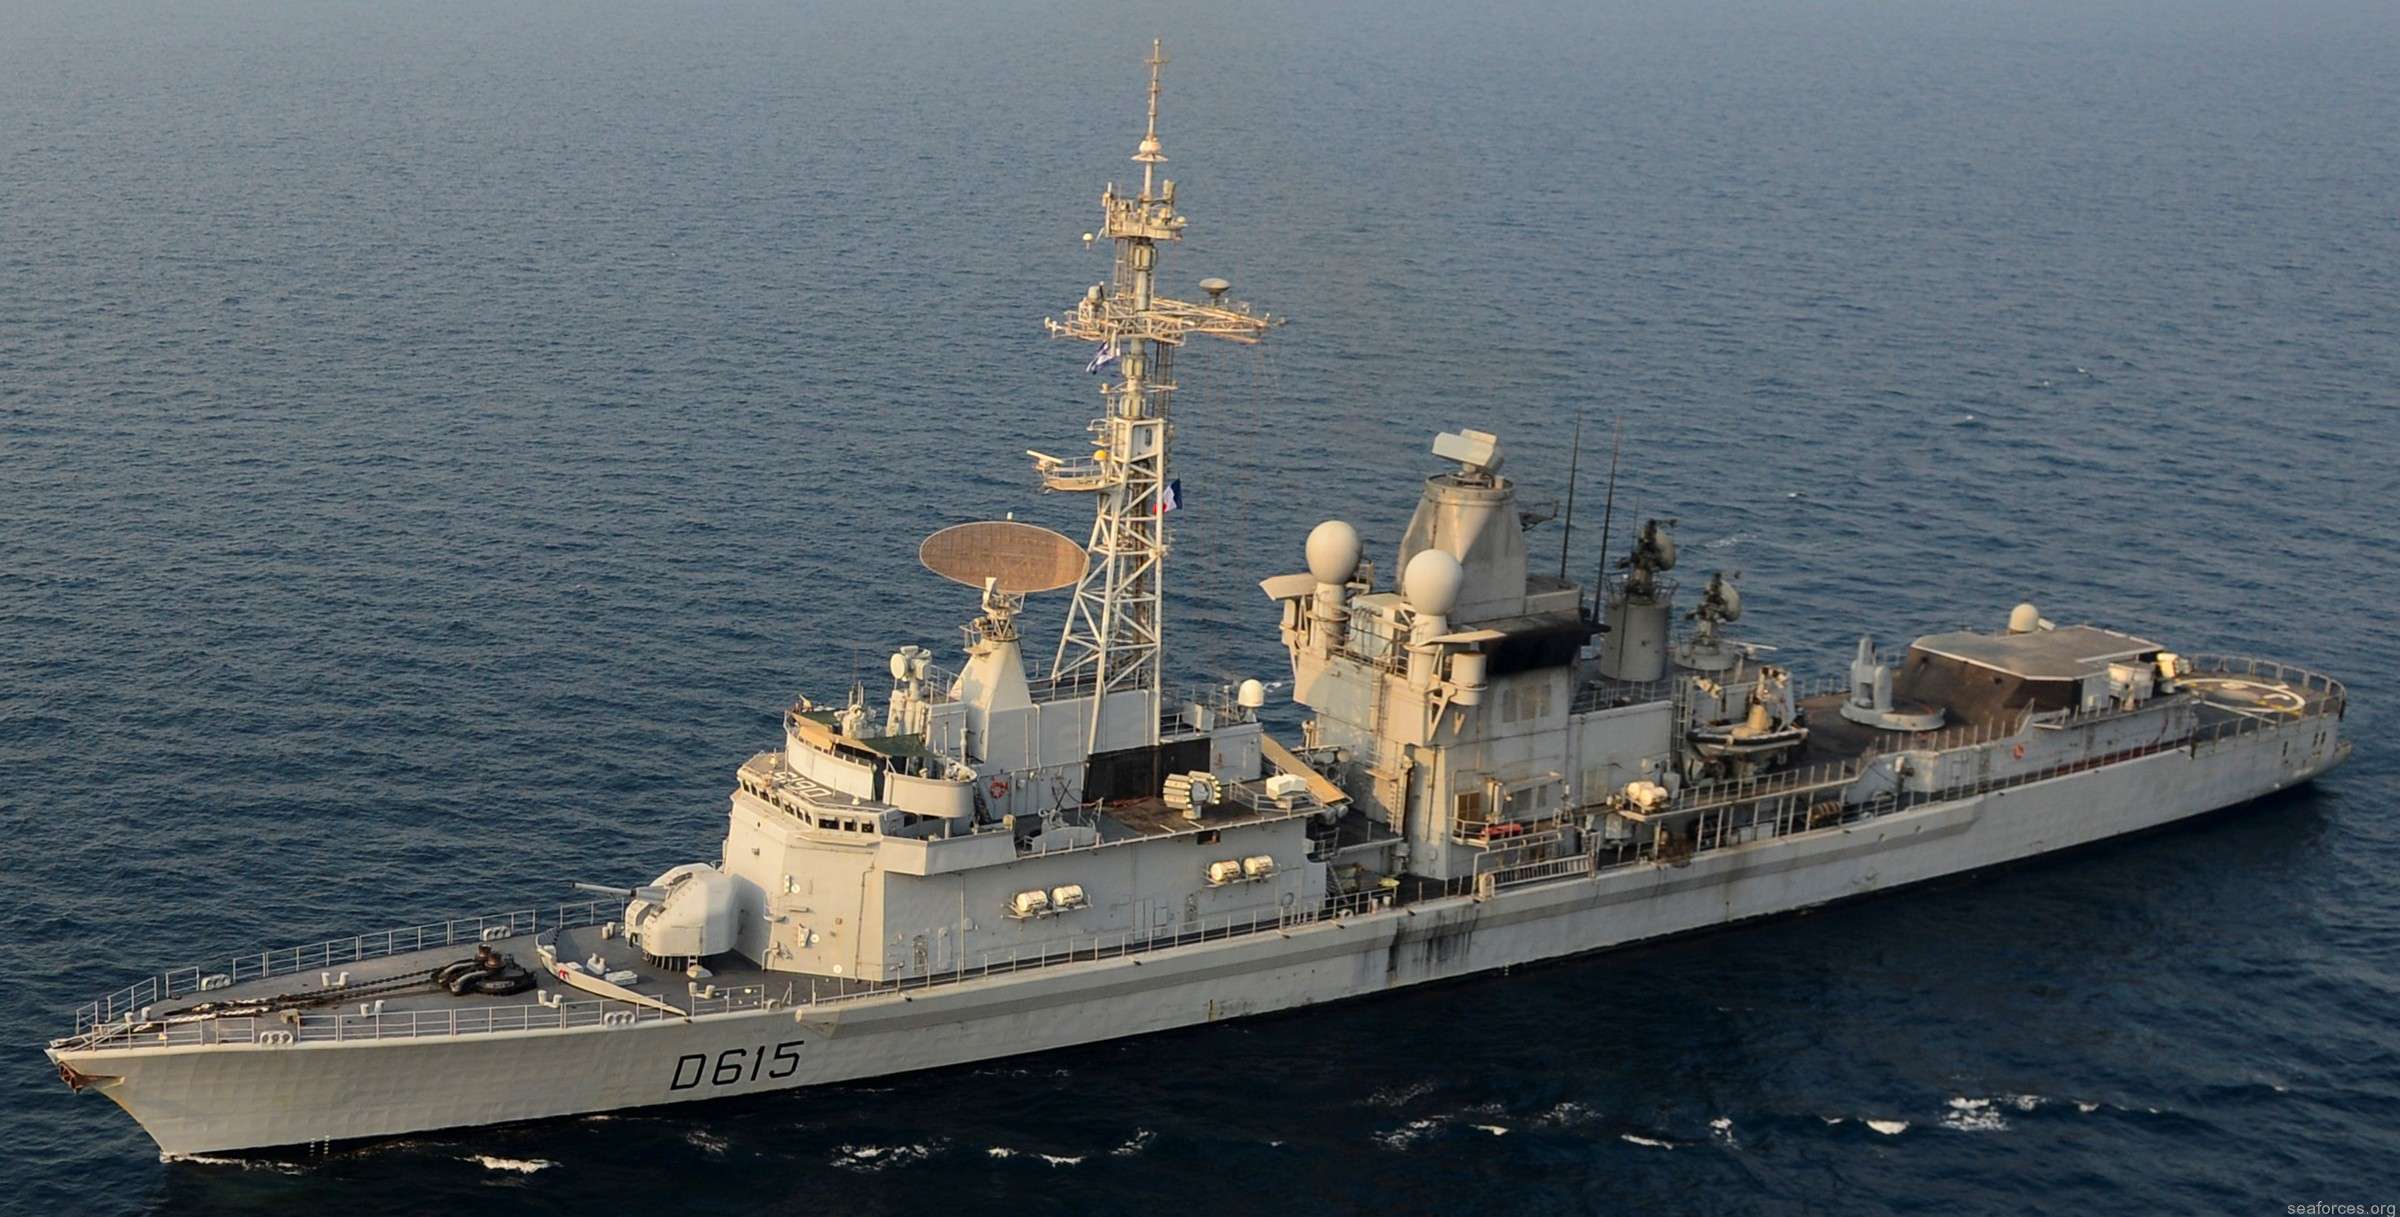 Ξεκίνησε η επιχείρηση Ειρήνη ανοιχτά της Λιβύης- Συμμετοχή της Ελλάδας με ένα πλοίο αλλά κουβέντα για την Κρήτη